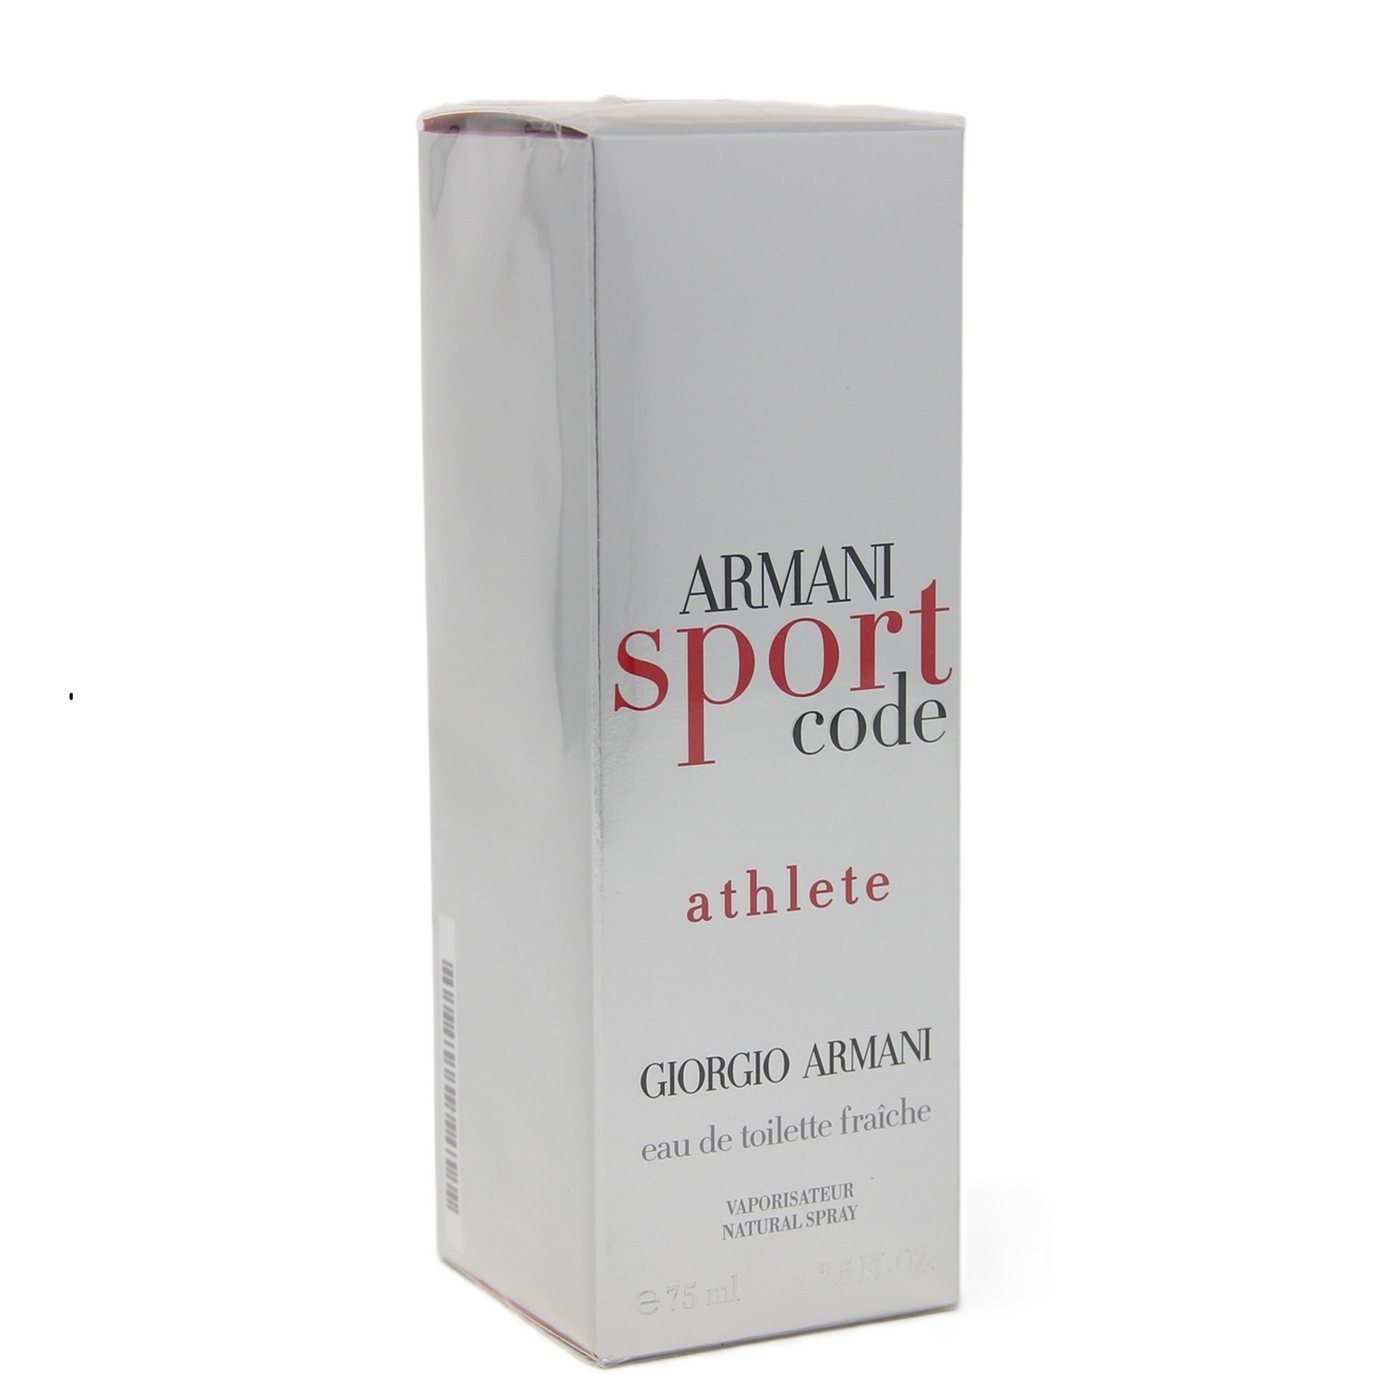 Emporio Armani Eau de Toilette Giorgio Armani Code Sport Athlete Eau de Toilette Faiche 75 ml von Emporio Armani